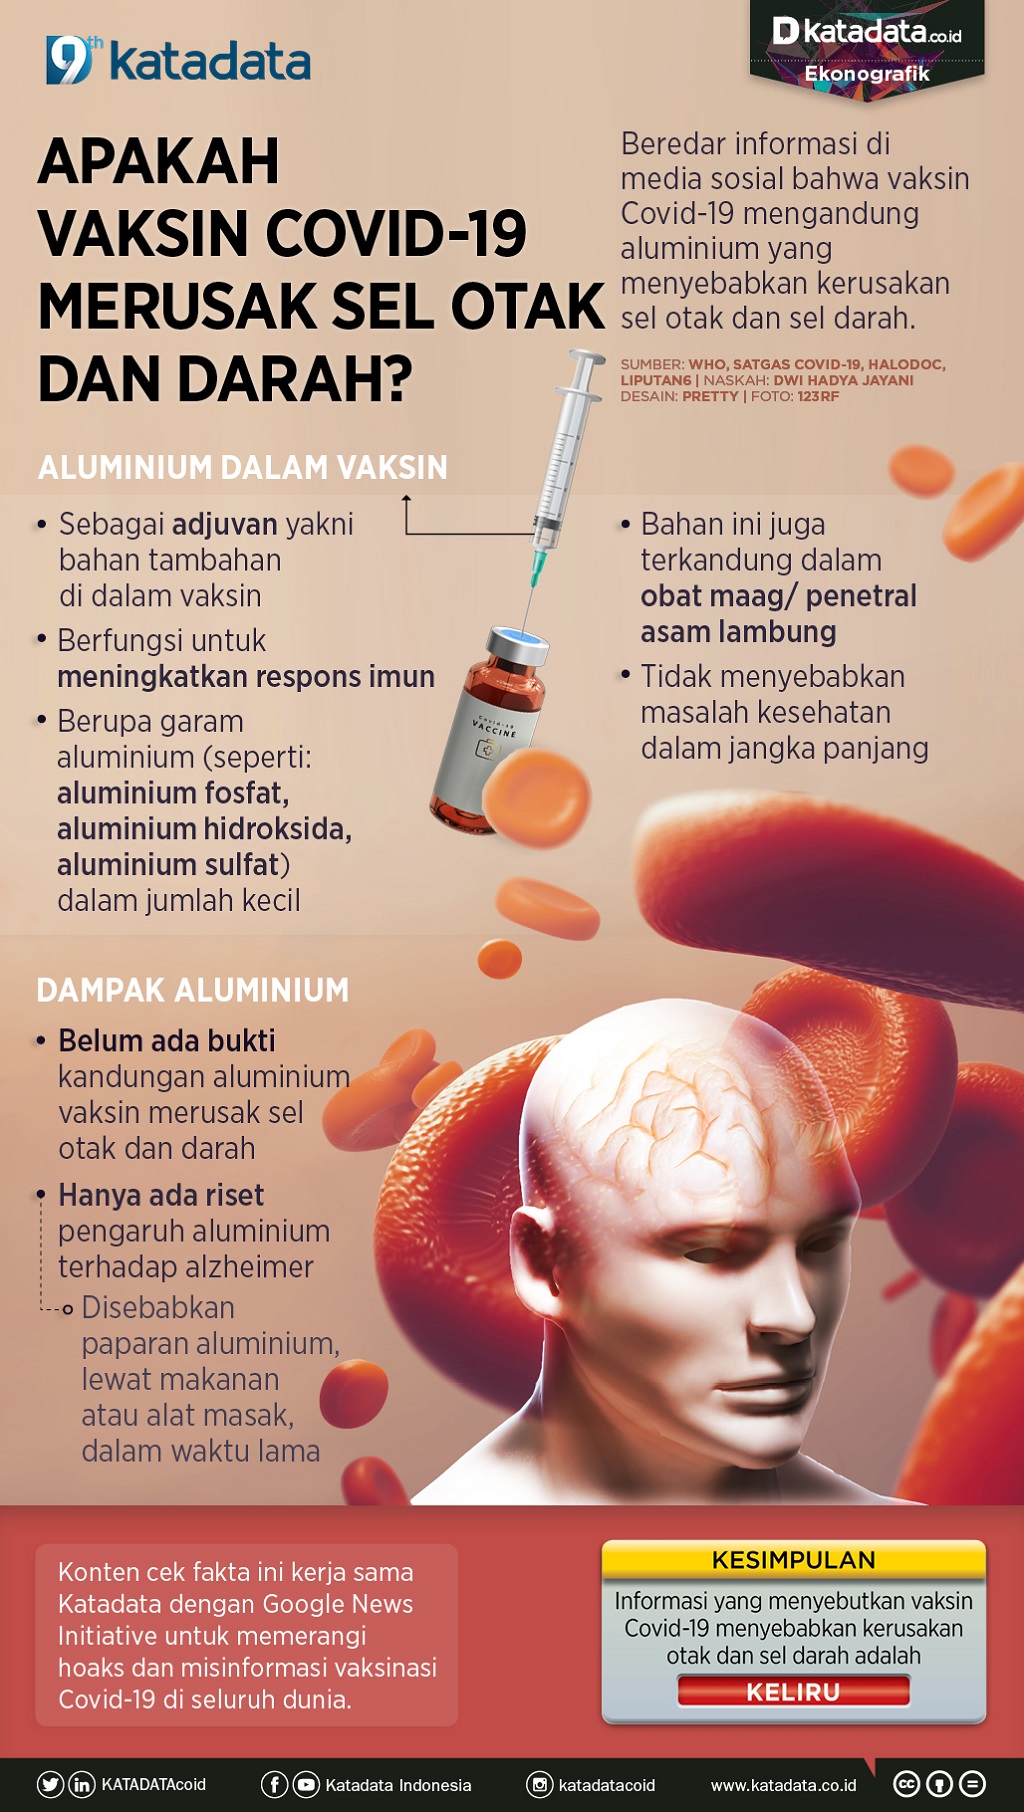 Infografik_Apakah Vaksin Covid-19 Merusak Otak dan Sel Darah_rev